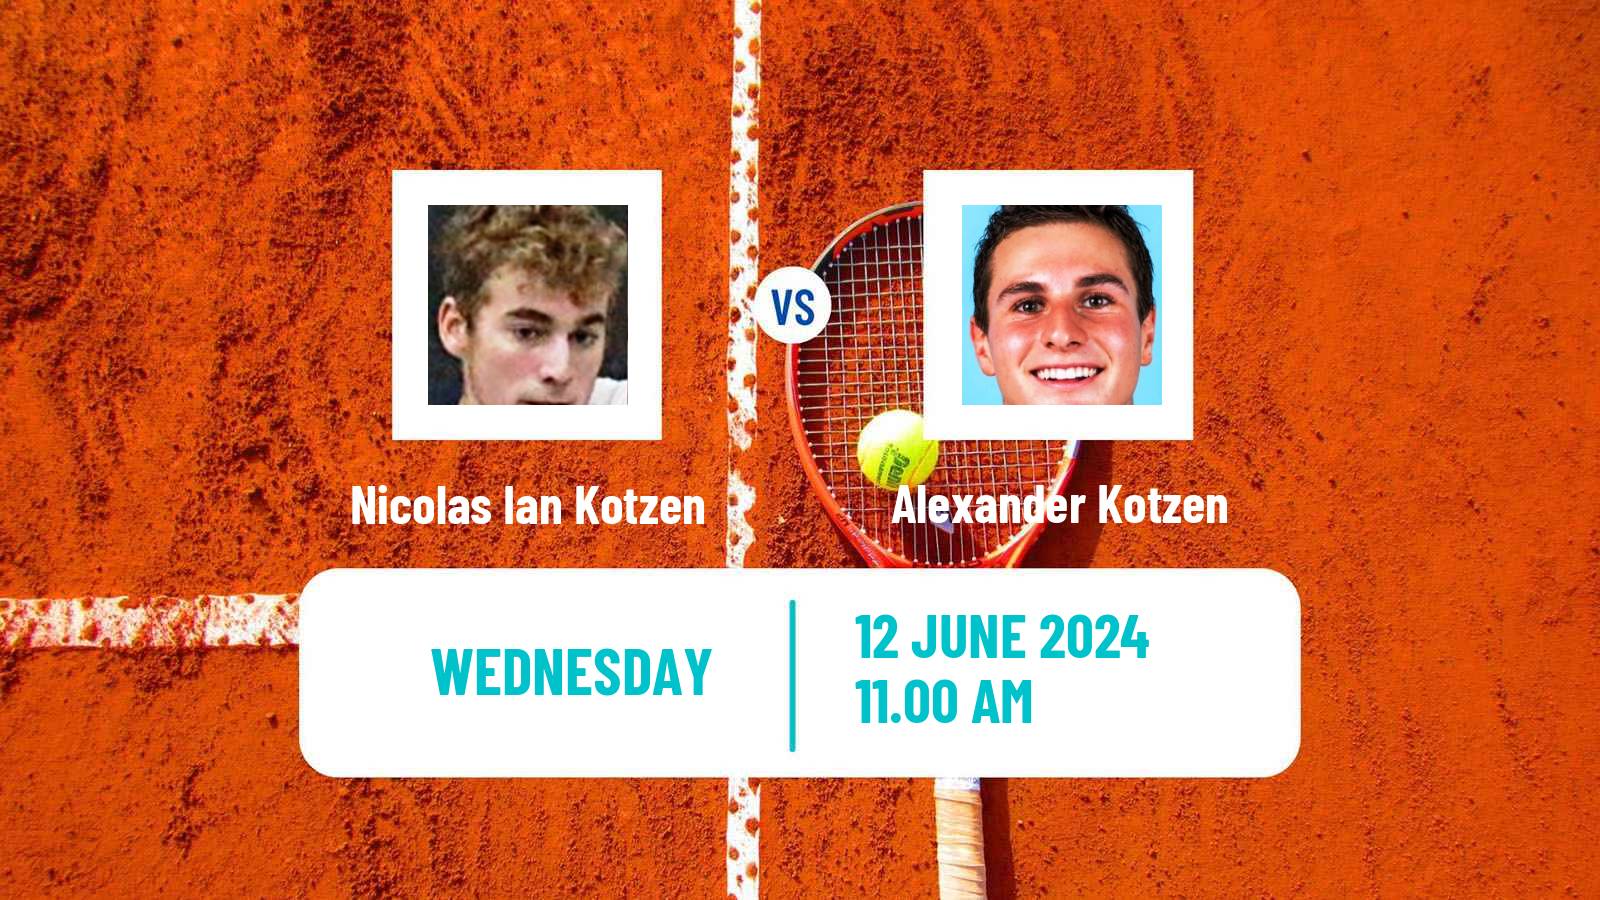 Tennis ITF M25 Wichita Ks Men Nicolas Ian Kotzen - Alexander Kotzen